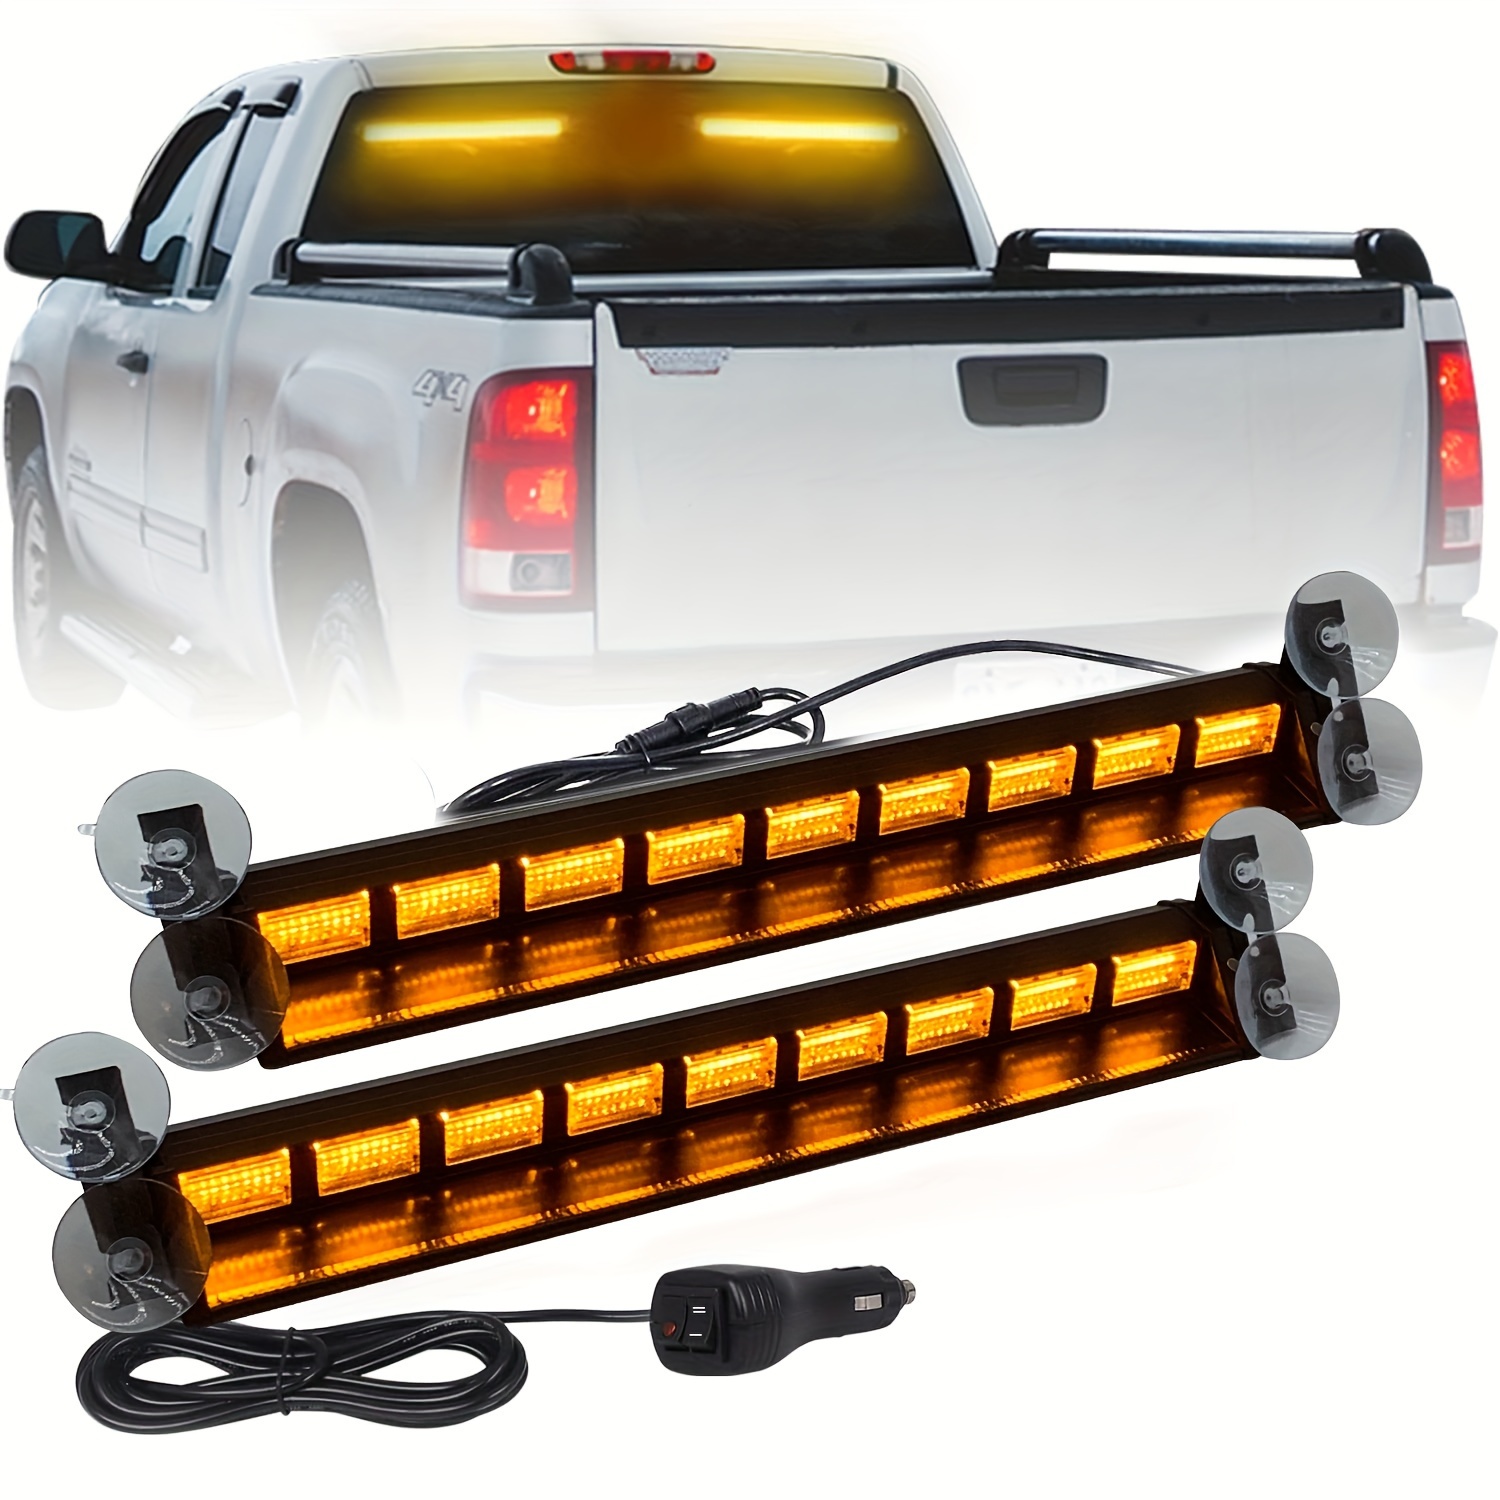 32 LED Warning Use Flashing Strobe Lights Emergency Vehicle Strobe